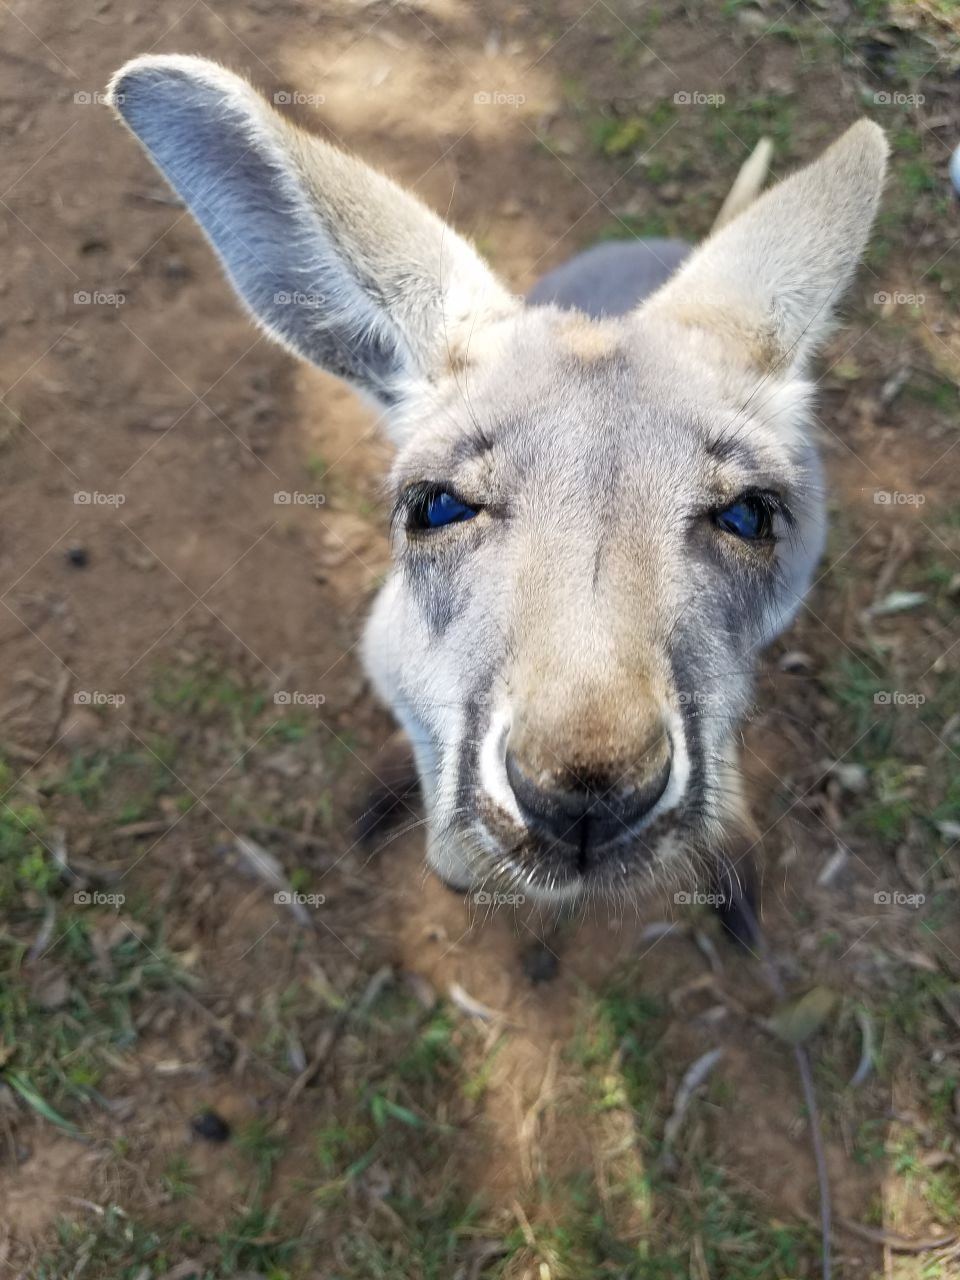 baby kangaroo face up closr